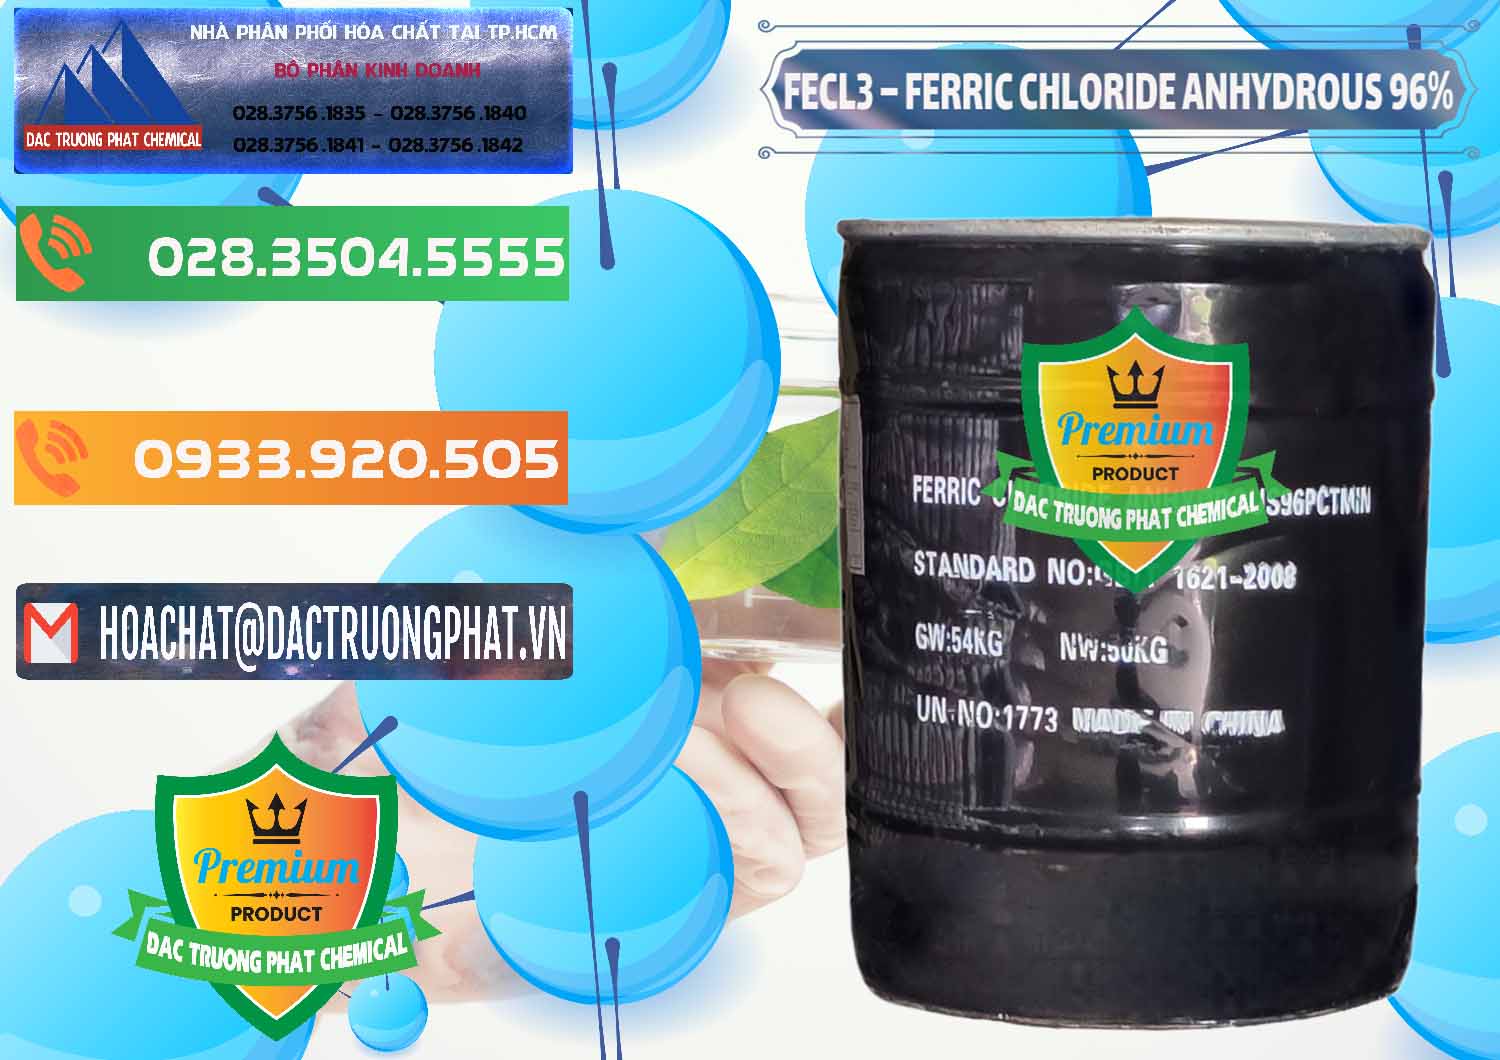 Cty chuyên cung ứng _ bán FECL3 – Ferric Chloride Anhydrous 96% Trung Quốc China - 0065 - Chuyên cung cấp - phân phối hóa chất tại TP.HCM - hoachatxulynuoc.com.vn